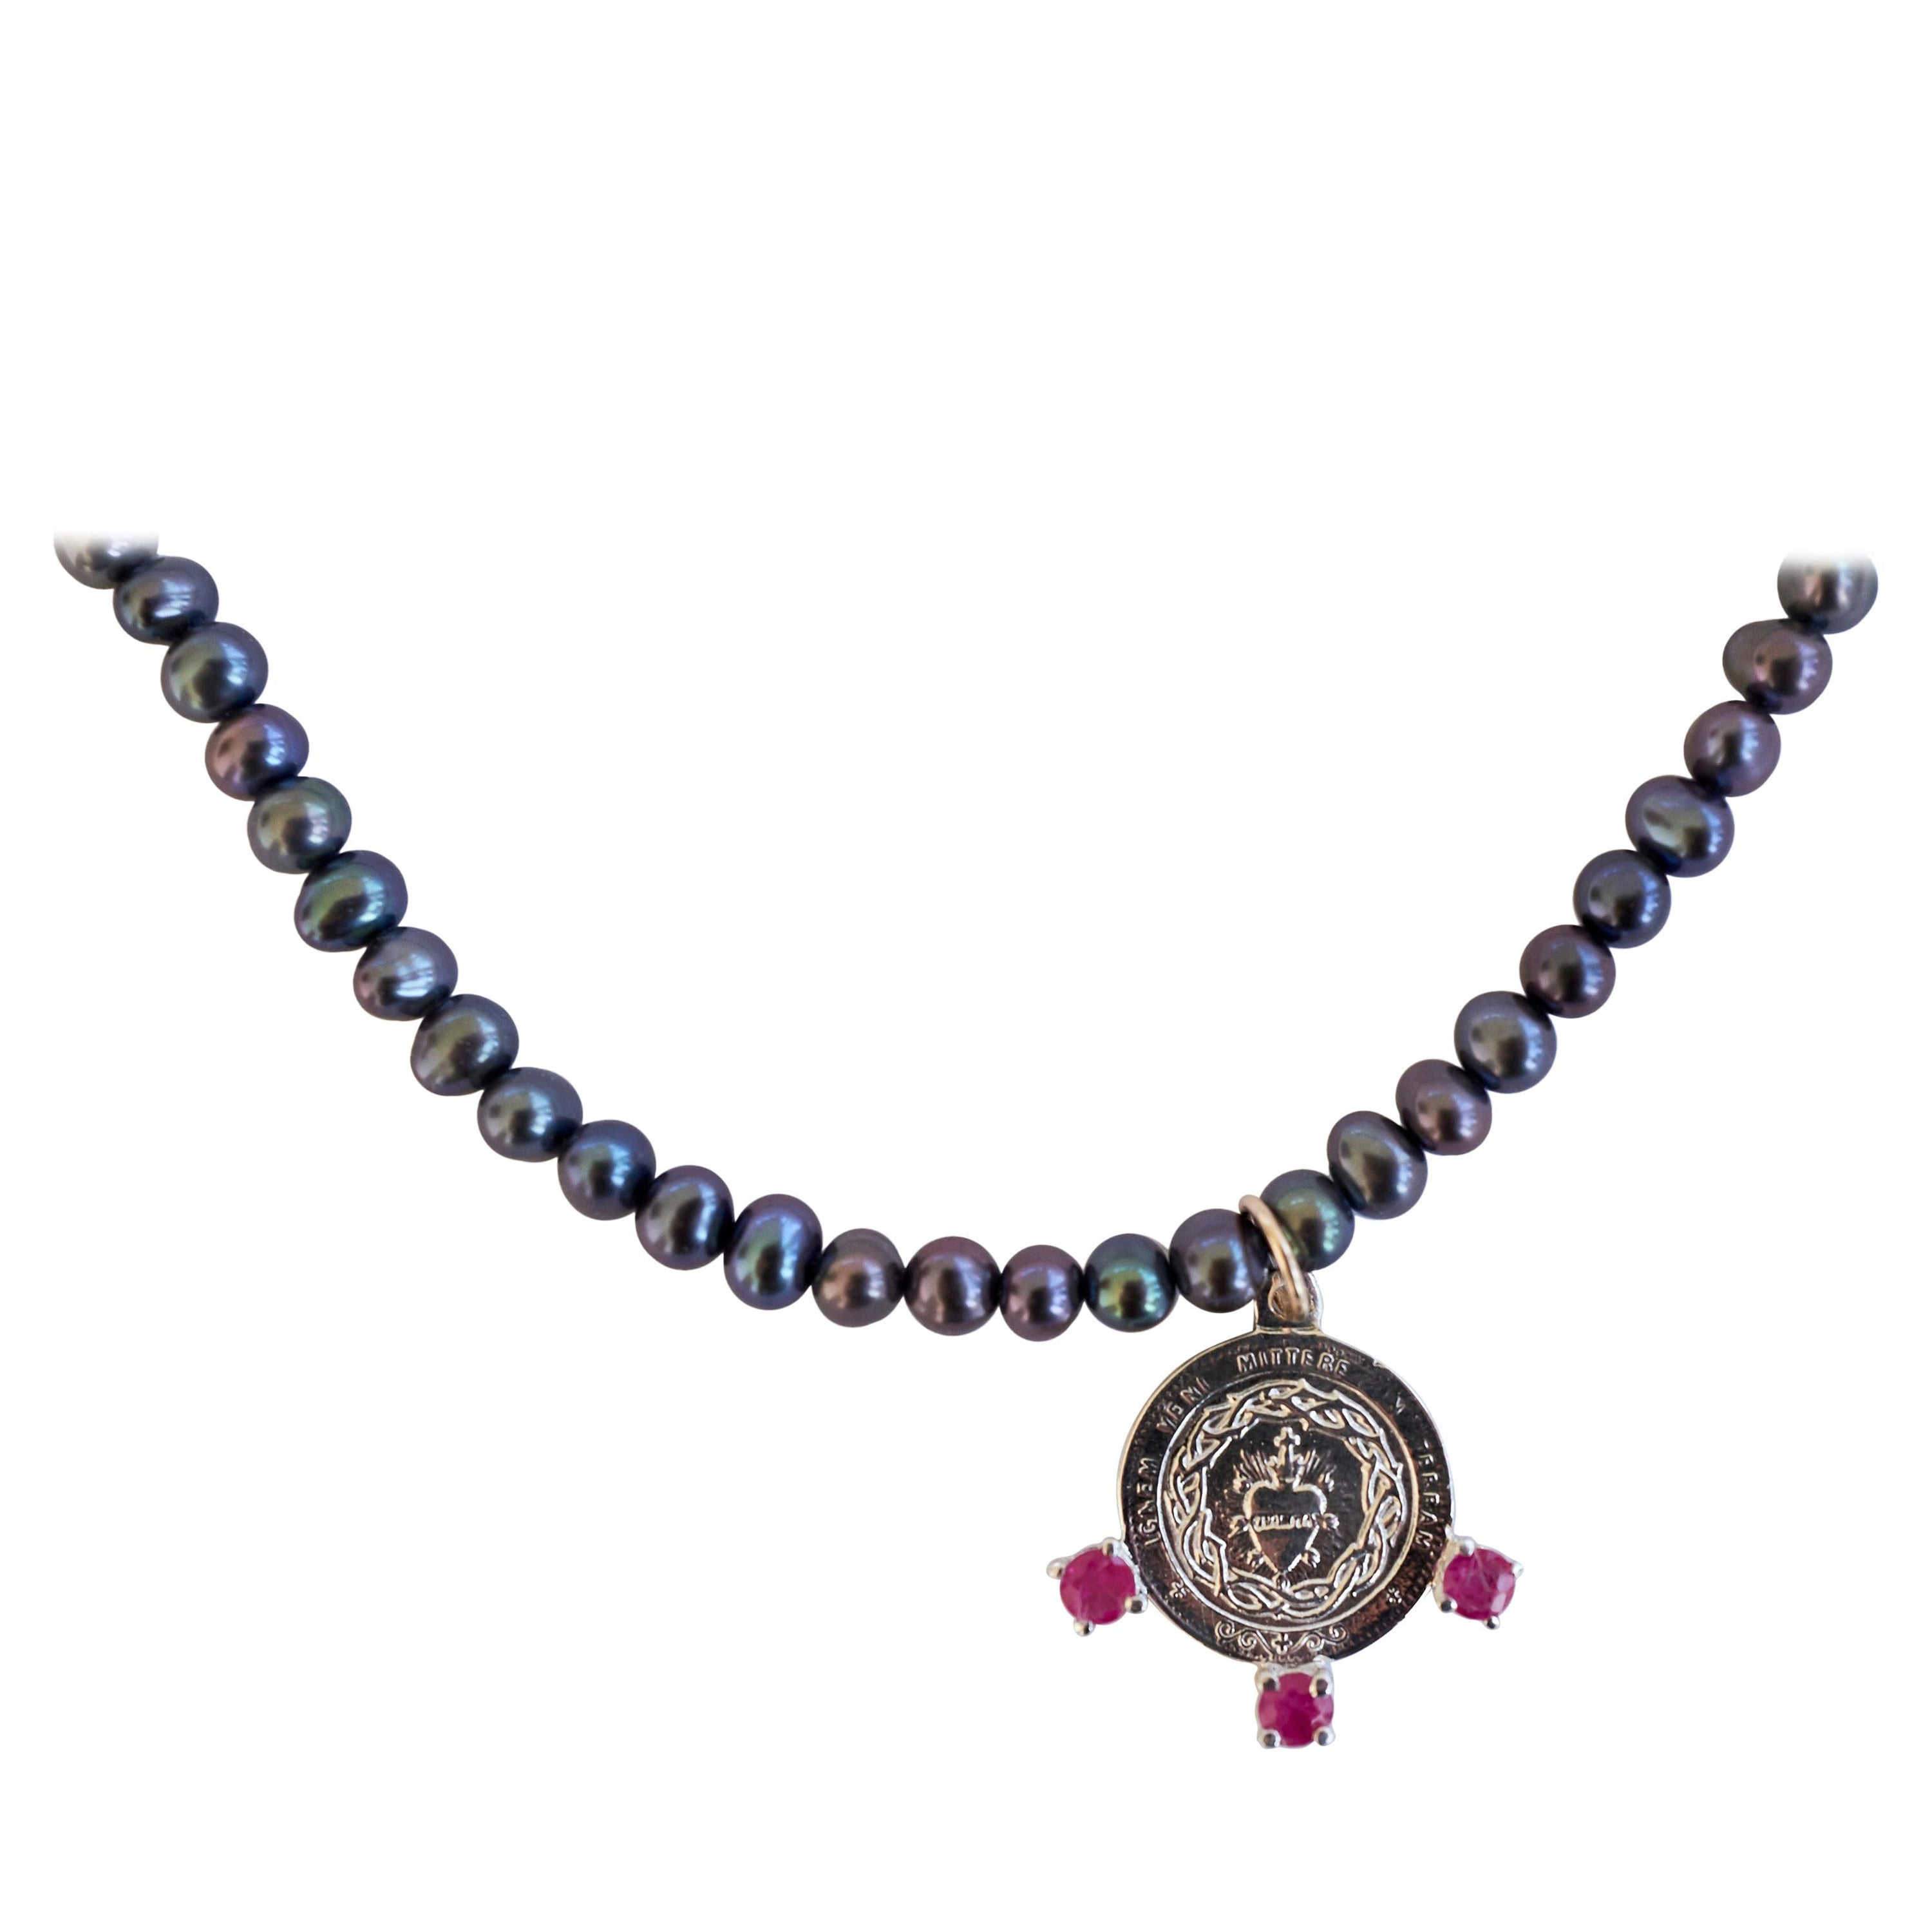 Halskette mit schwarzer Perle, Heiliges Herz Medaille, rosa Turmalin, Silber J Dauphin